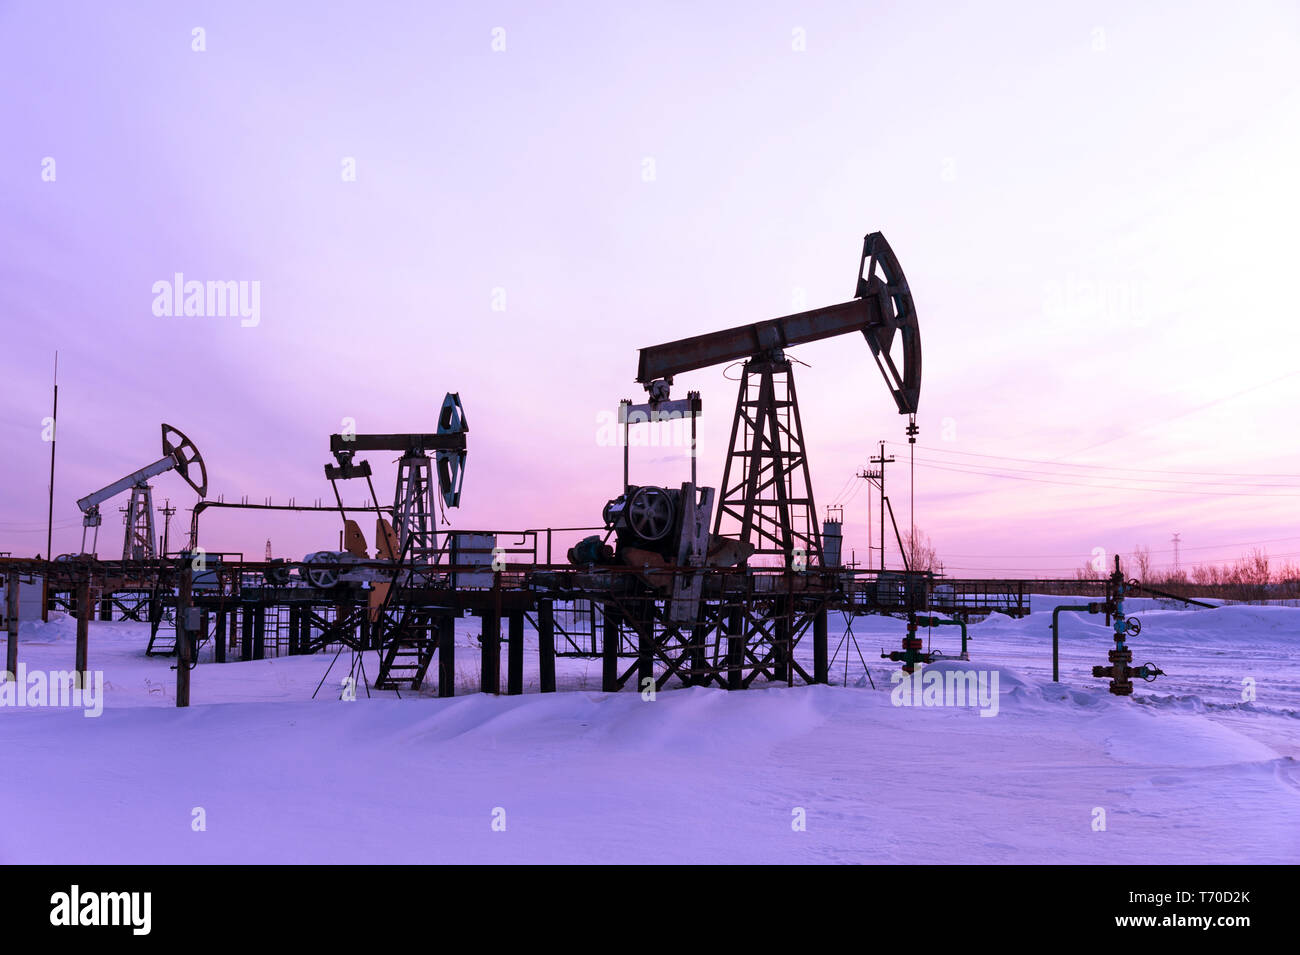 Топливная промышленность западной сибири. Добыча нефти в Западной Сибири. Добыча нефти и газа Тюмень. Нефтяная вышка Западная Сибирь. Нефтяная качалка и буровая вышка.